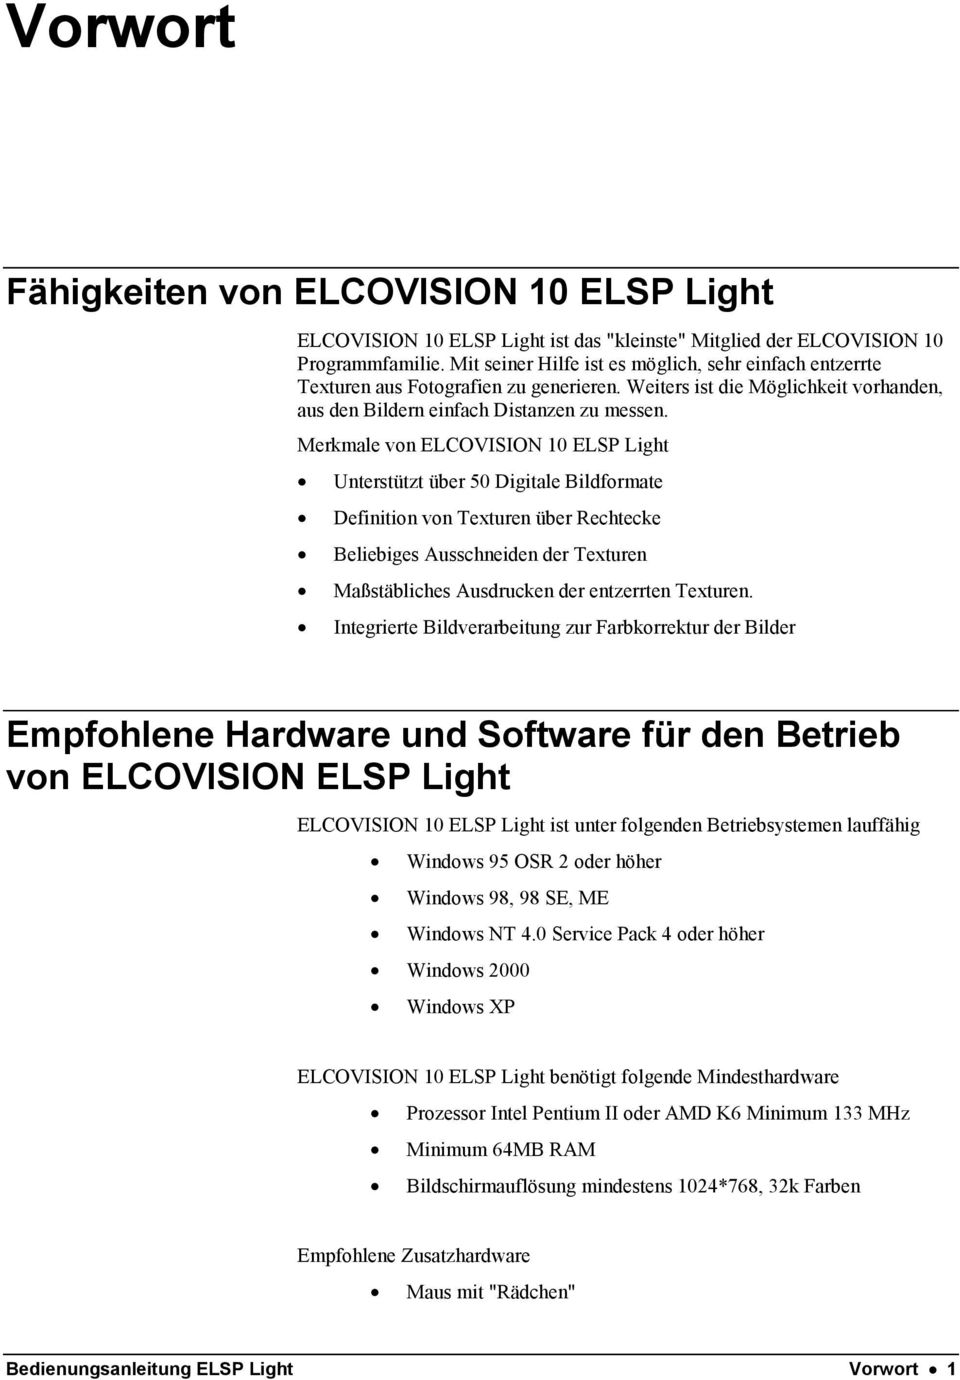 Merkmale von ELCOVISION 10 ELSP Light Unterstützt über 50 Digitale Bildformate Definition von Texturen über Rechtecke Beliebiges Ausschneiden der Texturen Maßstäbliches Ausdrucken der entzerrten